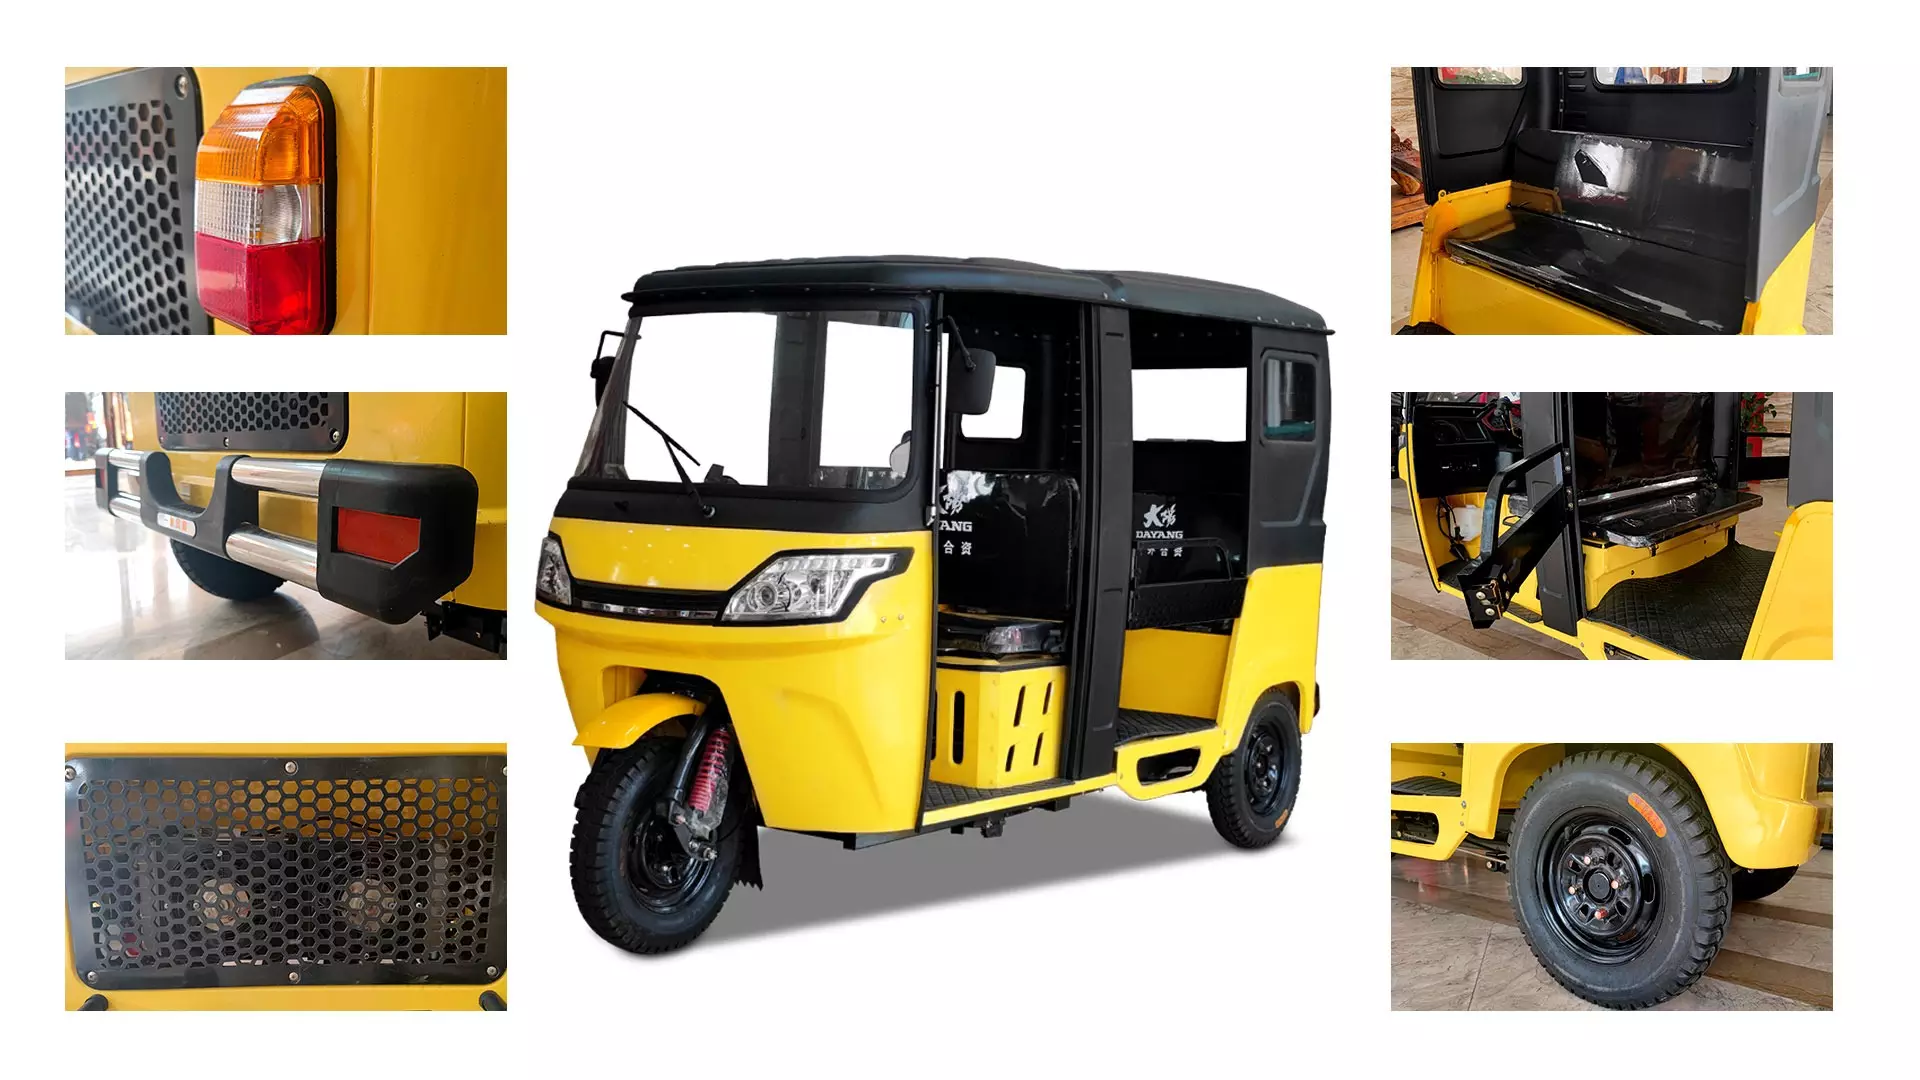 2022 New model  DAYANG Mini Hot sale Bajaj closed cabin Rickshaw Price Taxi Passenger Tricycle Tuk Tuk